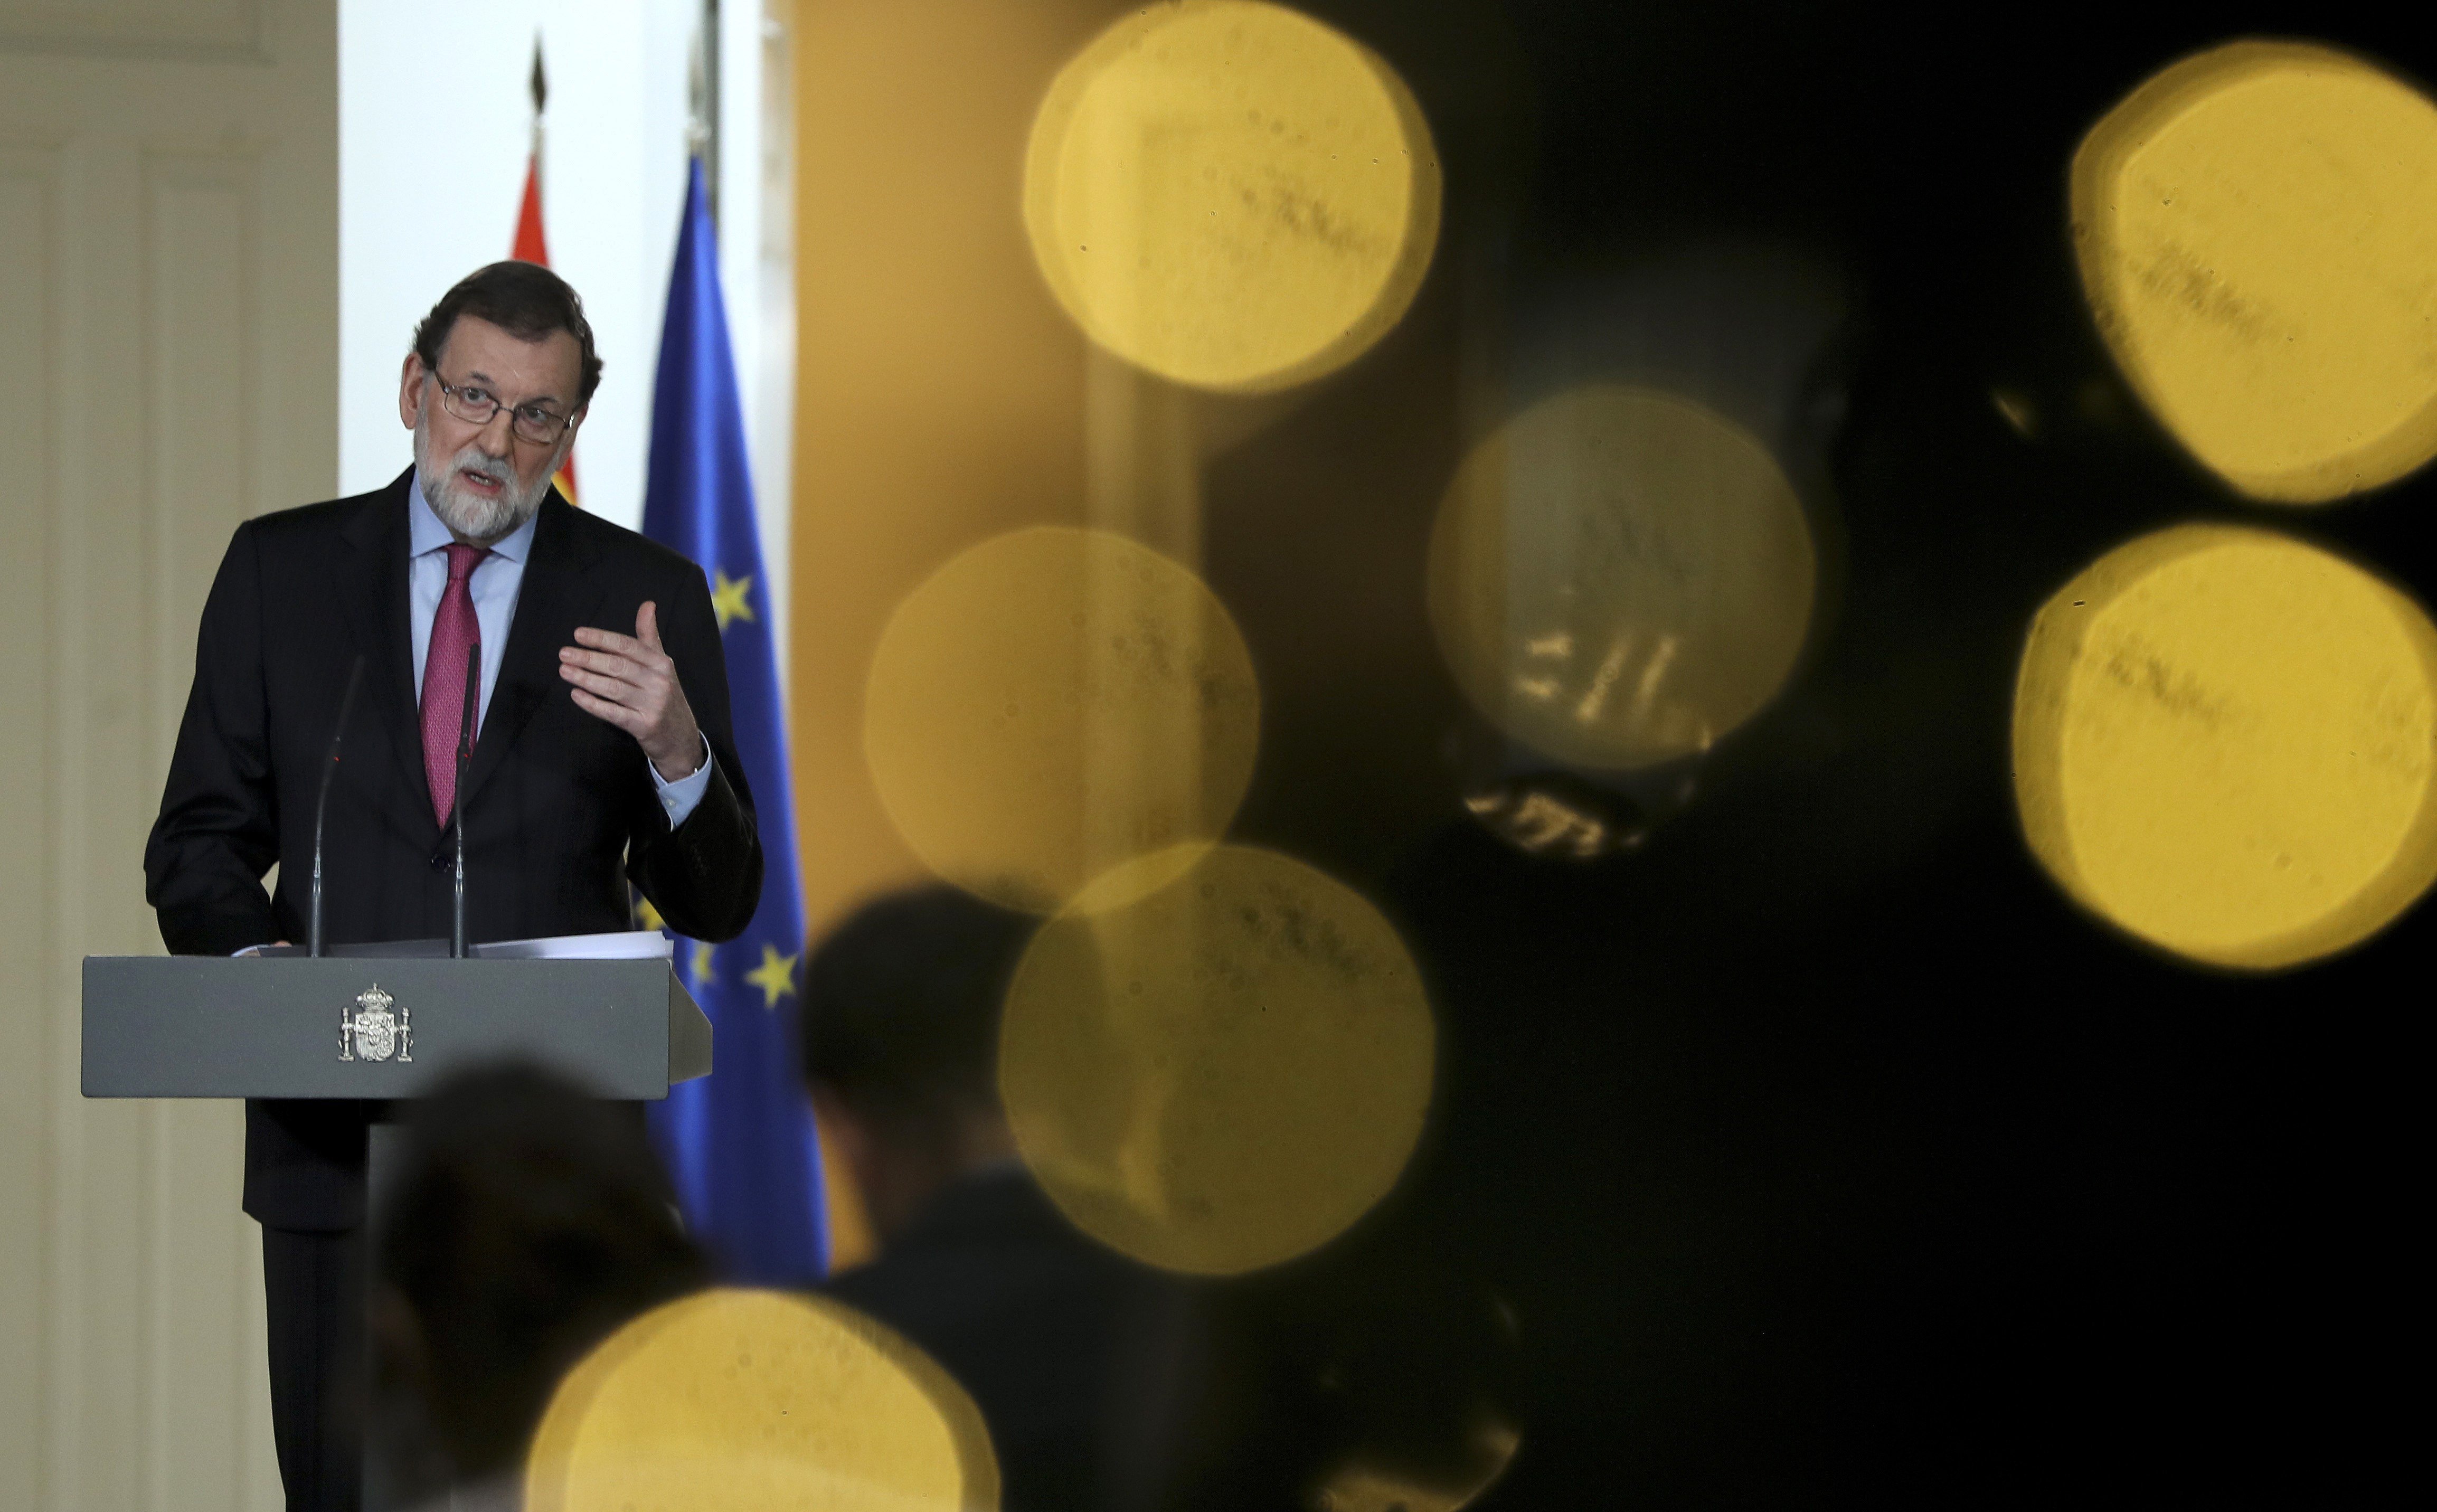 El argumento de Rajoy contra Puigdemont: "Imagínese que yo estuviera en Lisboa"